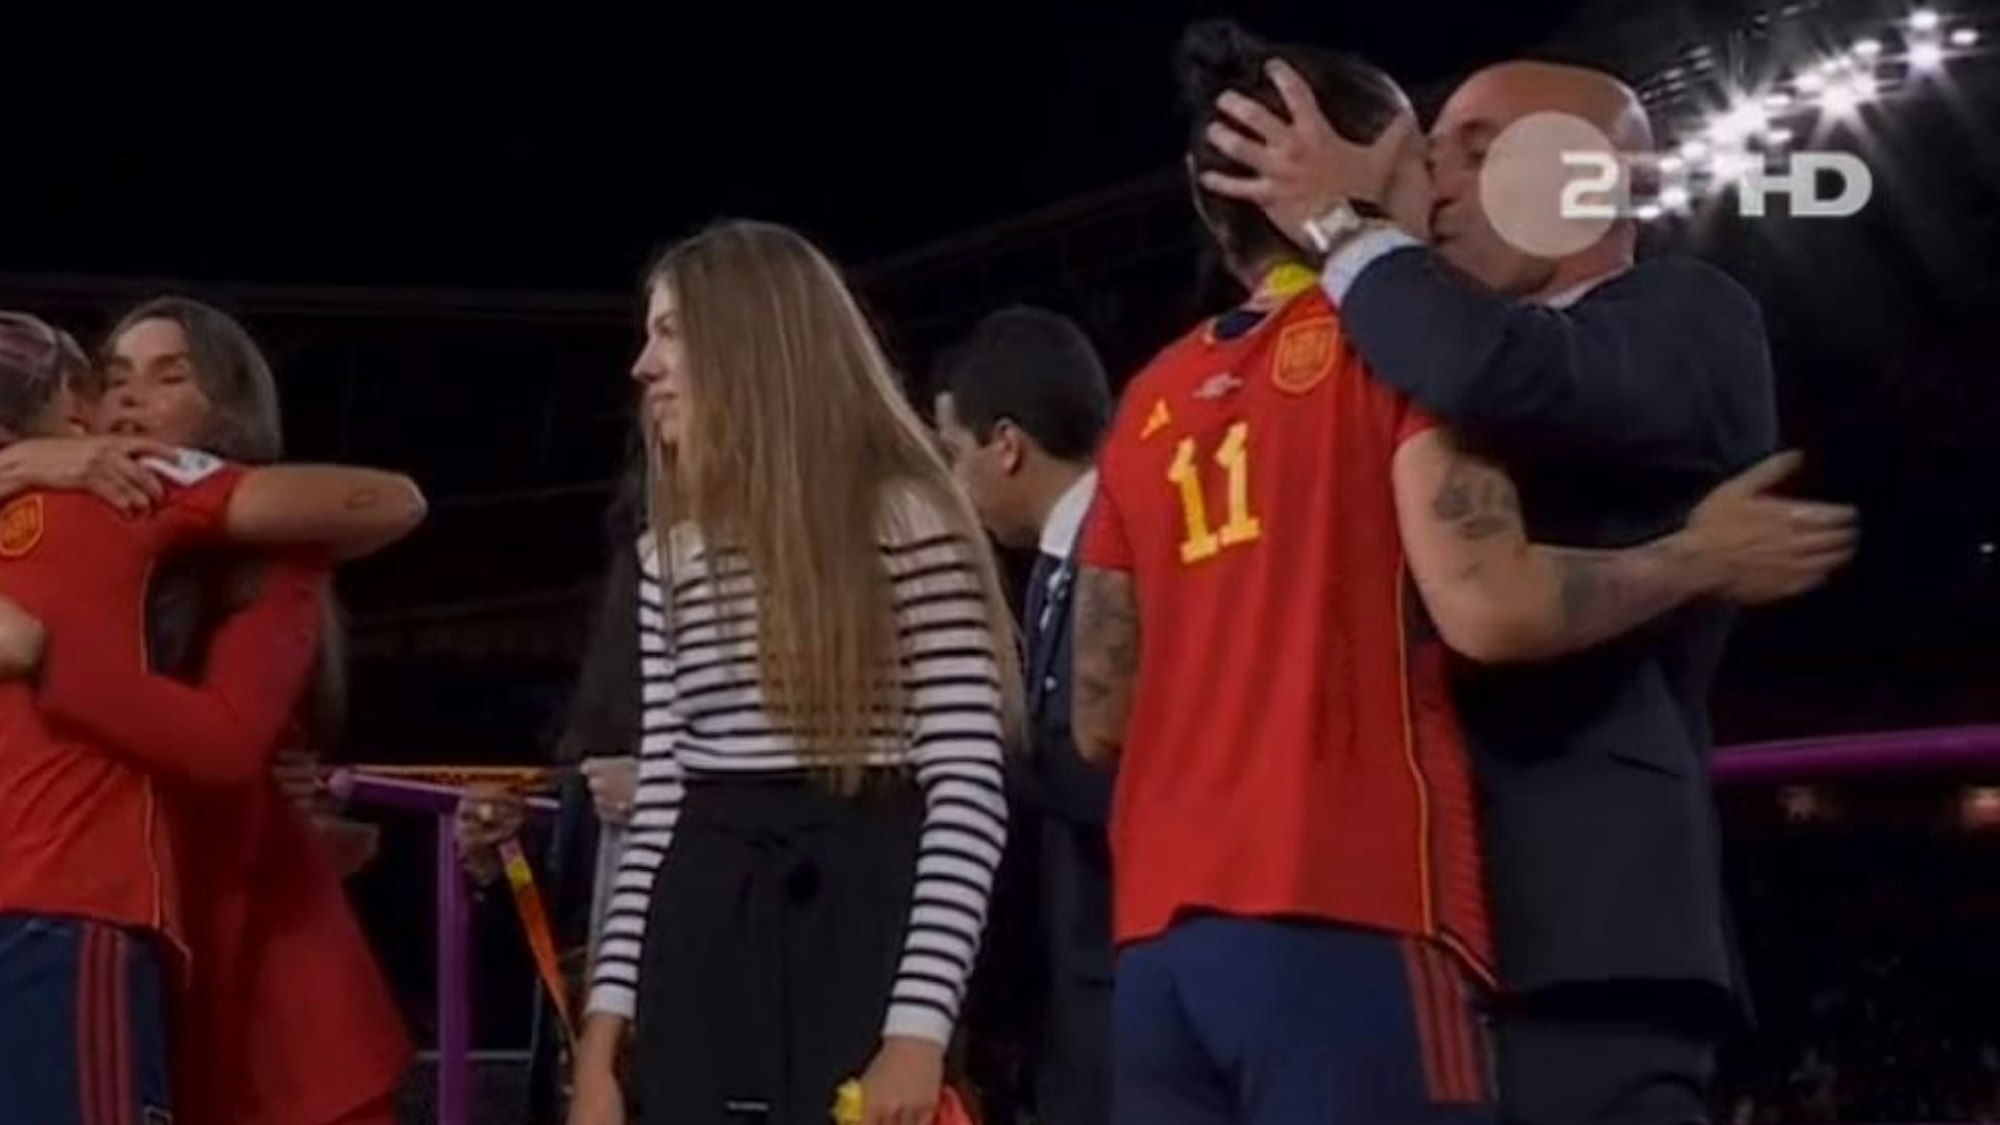 Spaniens Fußball-Boss Luis Rubiales küsst Weltmeisterin Jennifer Hermoso bei der Medaillenvergabe ungefragt auf den Mund.